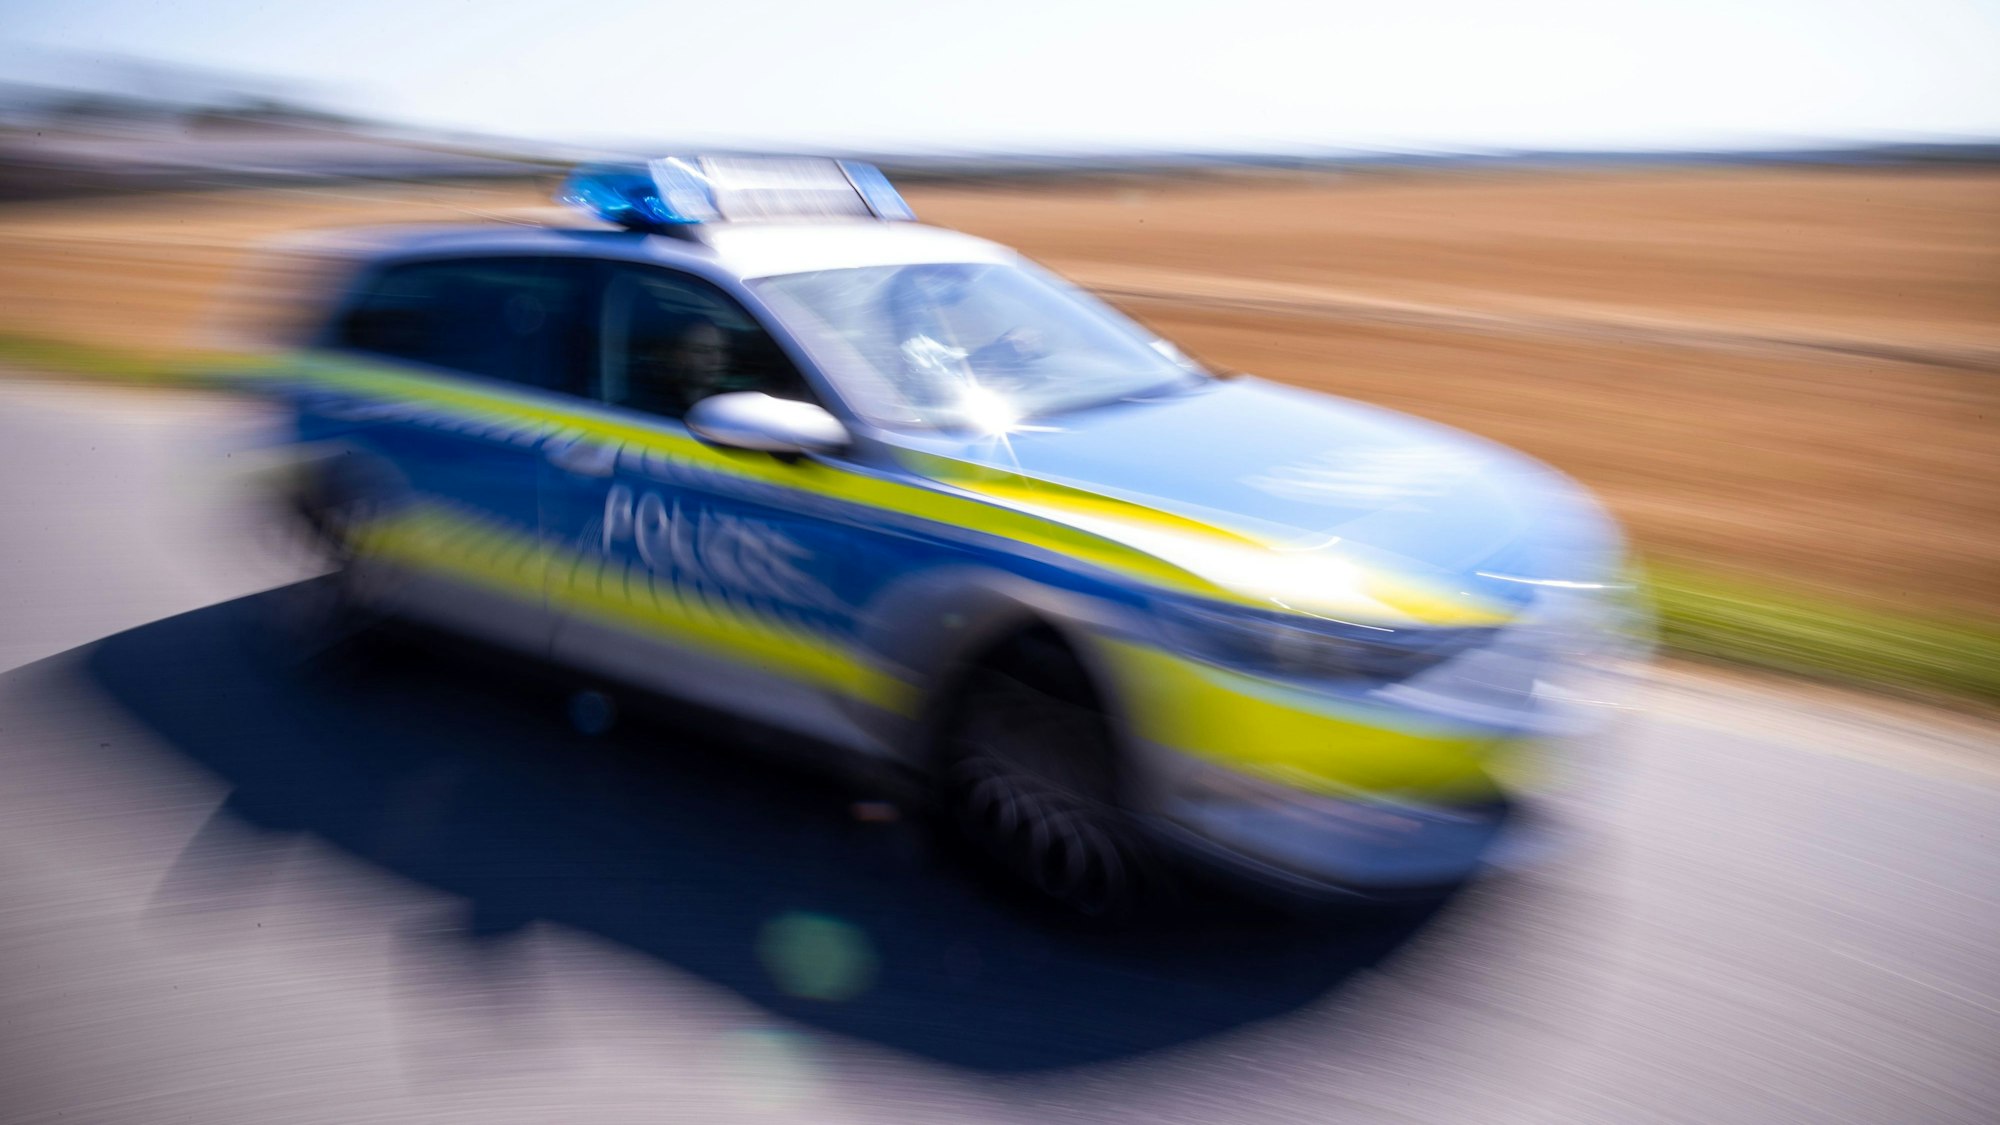 ARCHIV - 13.08.2020, Mecklenburg-Vorpommern, Groß Grenz: Ein Polizeiauto fährt über eine Dorfstraße.